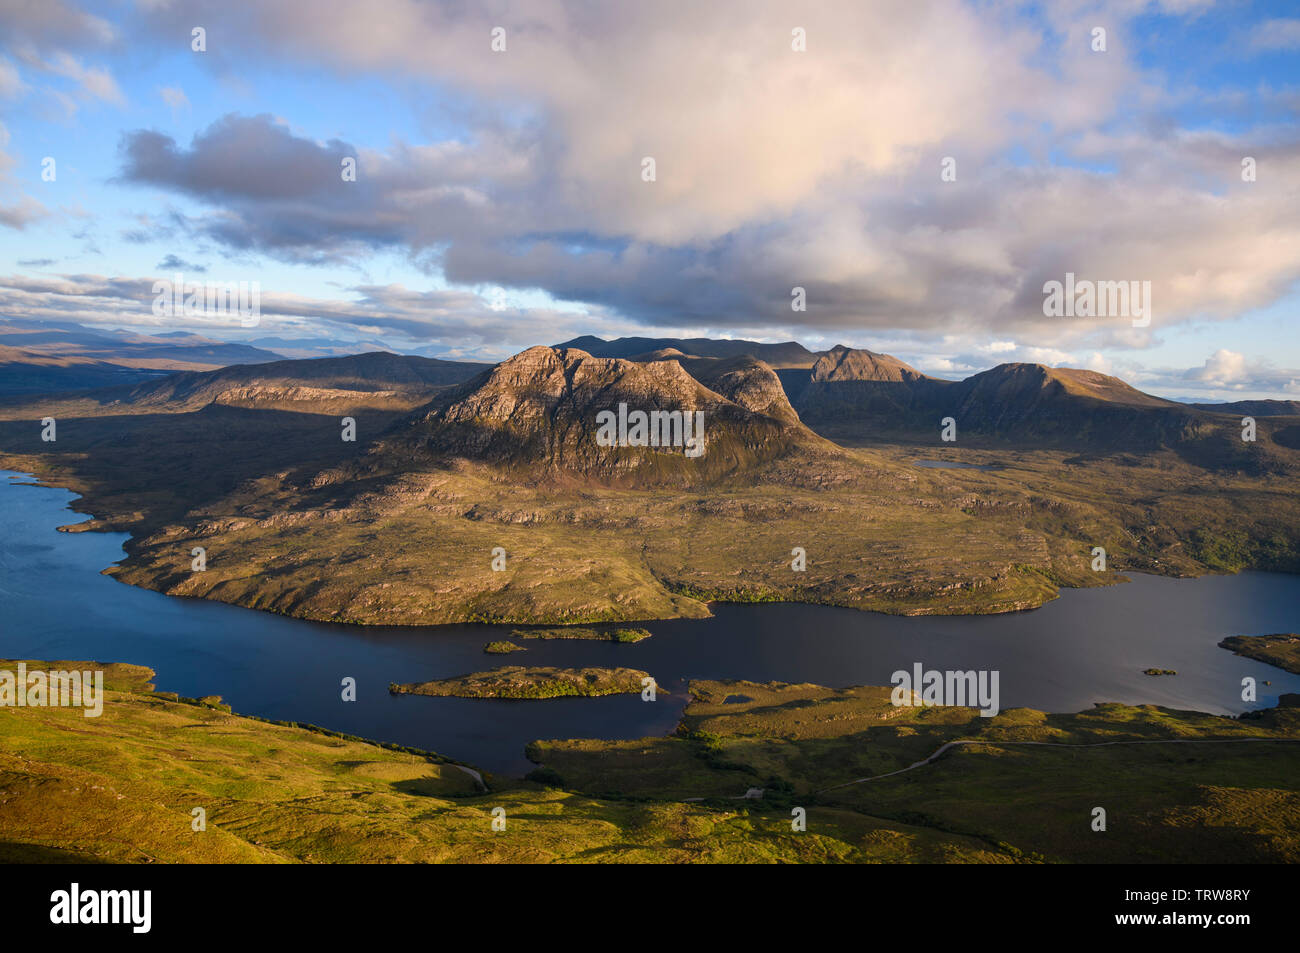 Vista desde el Stac Pollaidh mirando hacia Loch Lurgainn Sgorr Tuath, y Beinn un Eoin, Coigach, Wester Ross, Highlands, Escocia Foto de stock